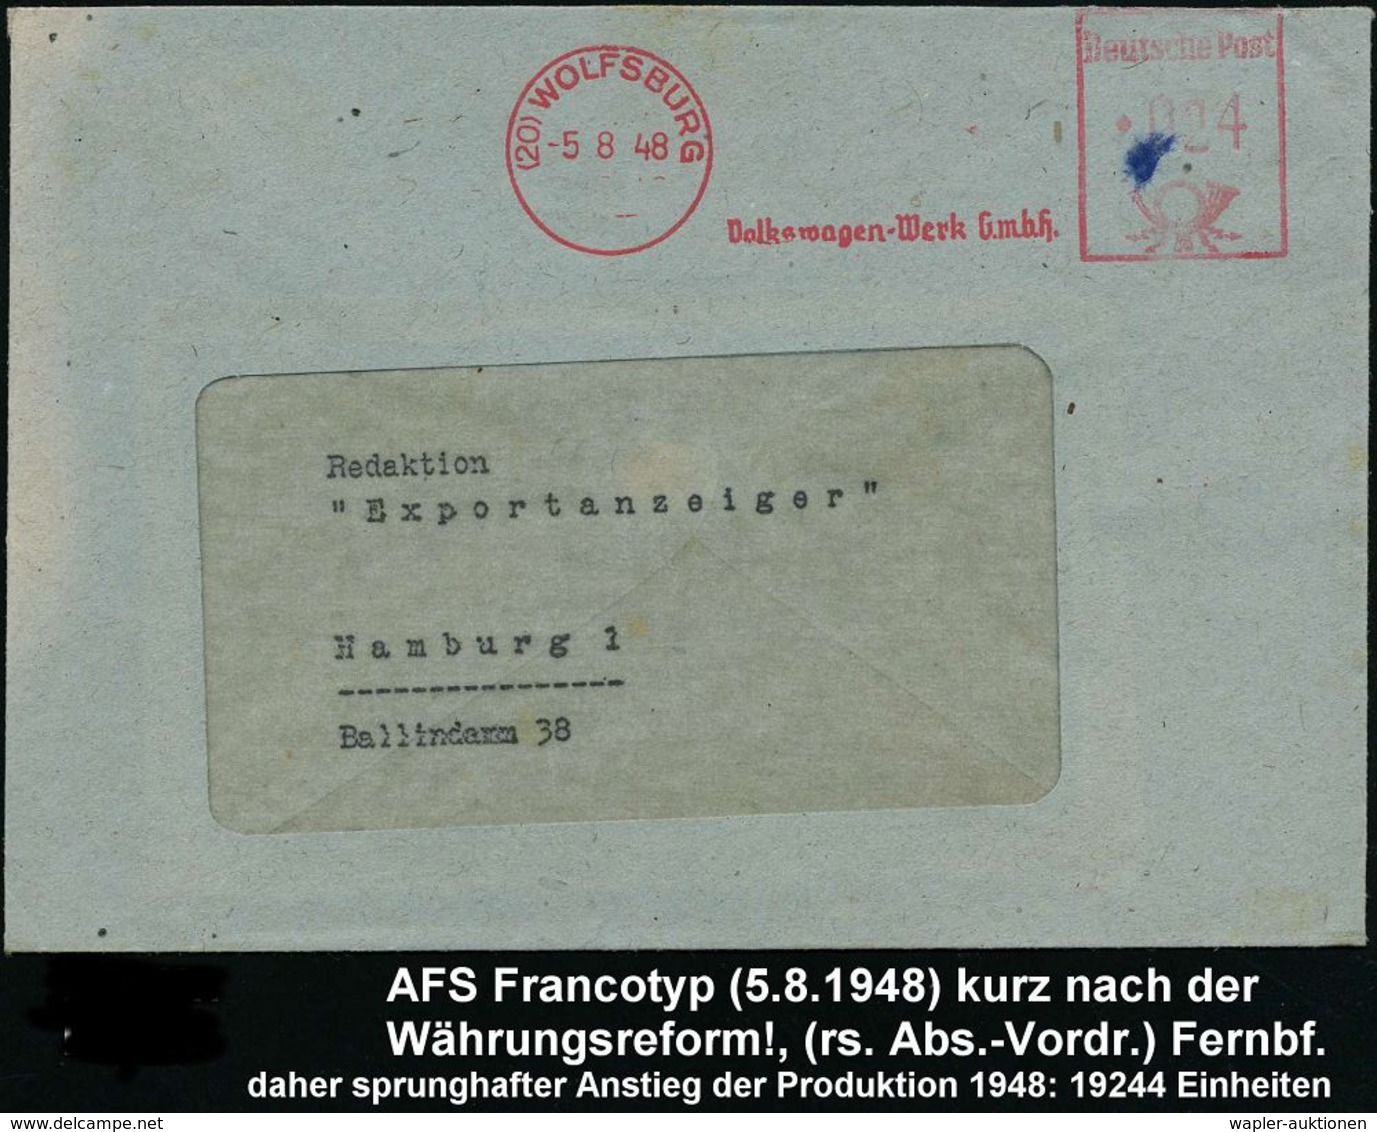 VOLKSWAGEN / VW / K.-D.-F.-WAGEN / PORSCHE : (20) WOLFSBURG/ Volkswagen-Werk GmbH 1948 (5.8.) AFS, Rs. Abs.-Vordruck Aus - Cars